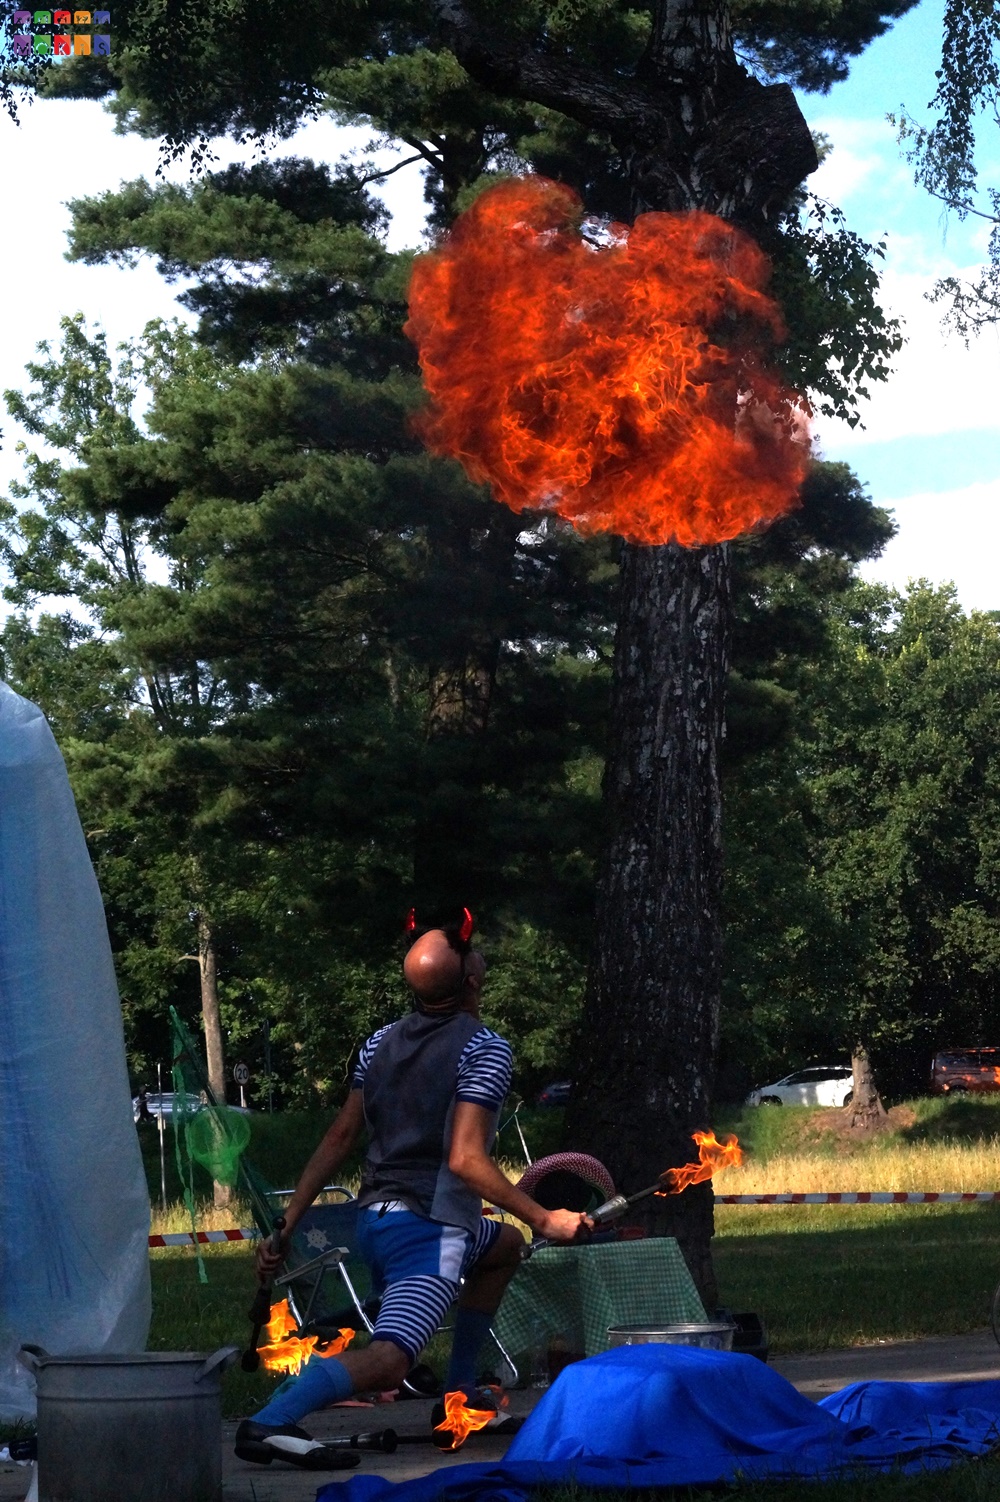 Zdjęcie przedstawiające mężczyznę patrzącego w górę przebranego w diabła. Nad nim unosi się ogień. W tle widać drzewa parkowe, trawnik